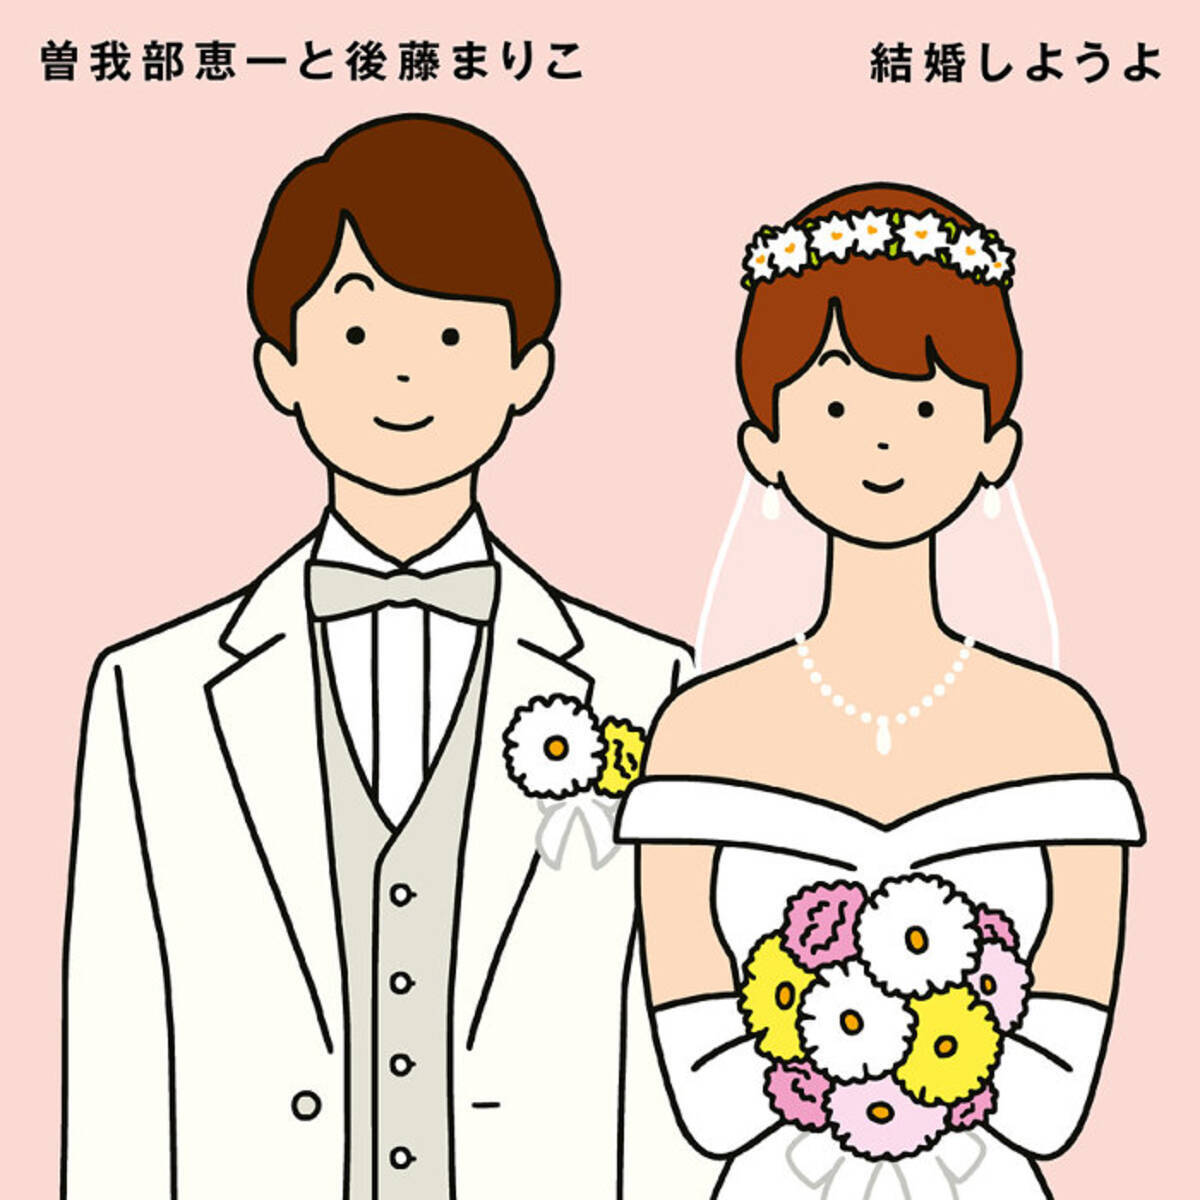 曽我部恵一と後藤まりこがコラボ 吉田拓郎 結婚しようよ をカバー 19年10月18日 エキサイトニュース